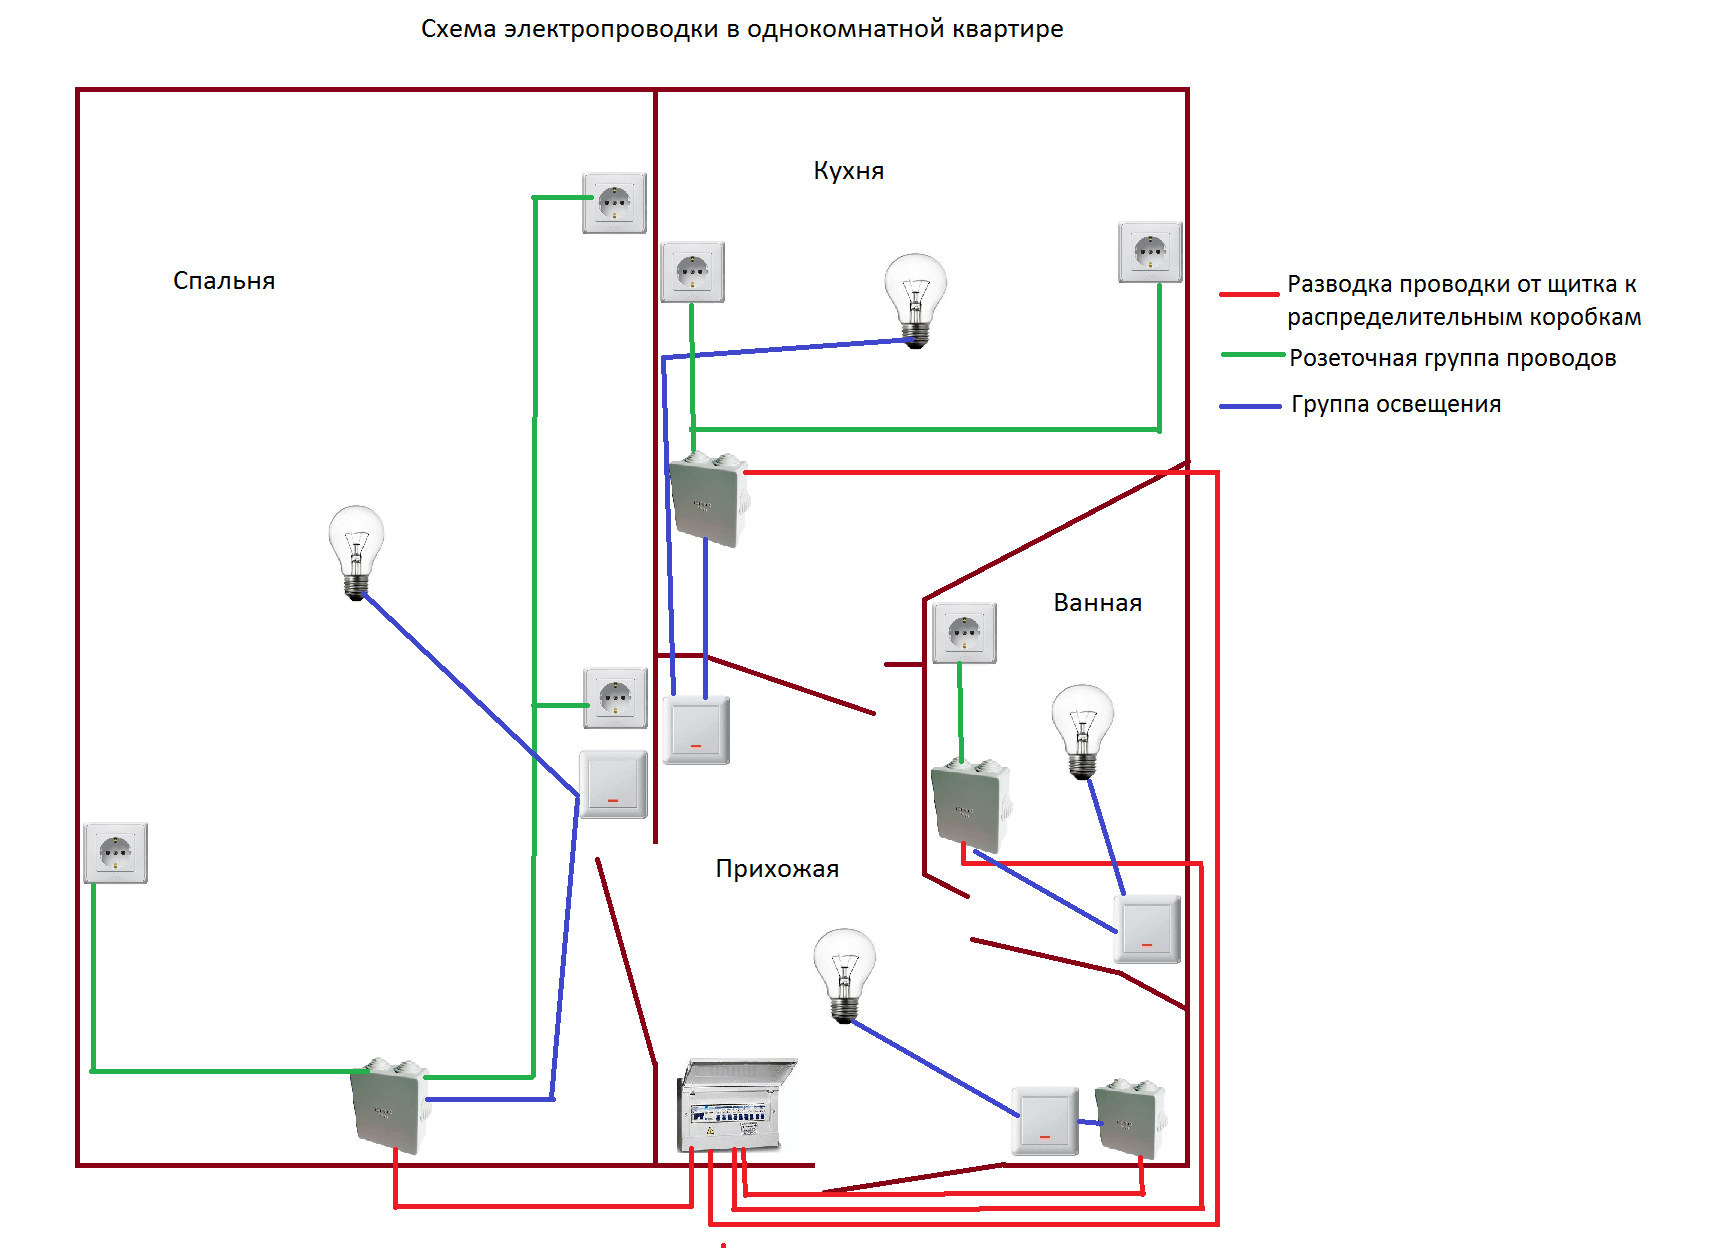 Как провести свет в доме. Схема проводки электричества в квартире 1 комнатной. Схема присоединения проводов в квартирной проводки. Схема разводки электропроводки в квартире 1 комнатной. Схема разводки проводки в однокомнатной квартире.